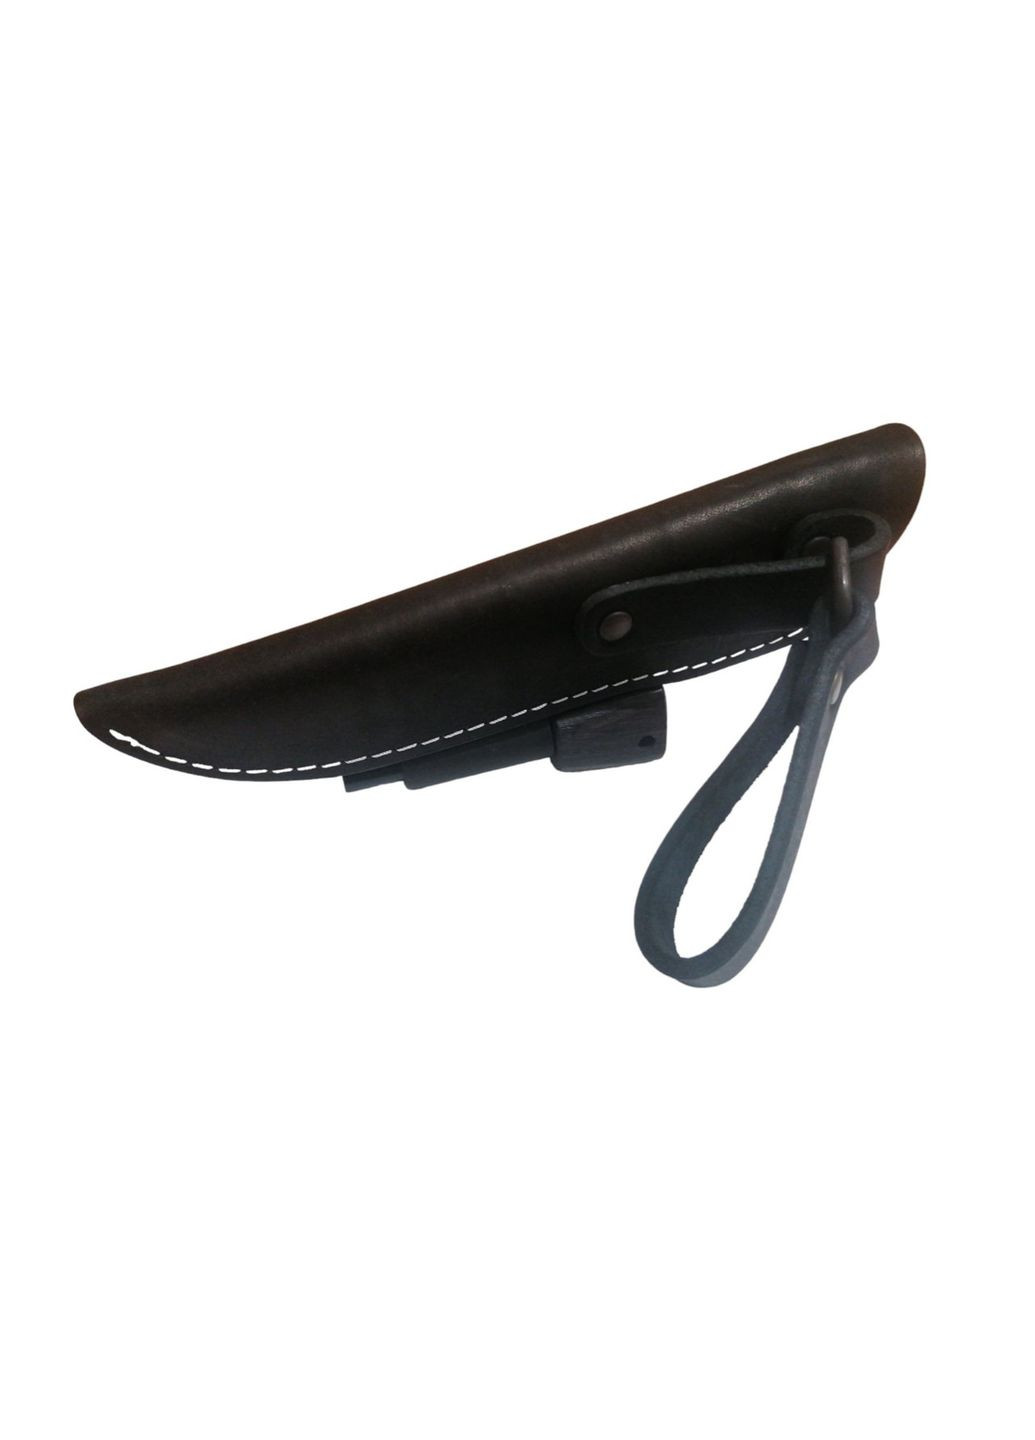 Охотничий нож NIGHTHAWK ADVENTURER SSHF, нержавеющая сталь, ручка дуб, чехол кожа, лезвие 135мм BPS Knives (292632299)